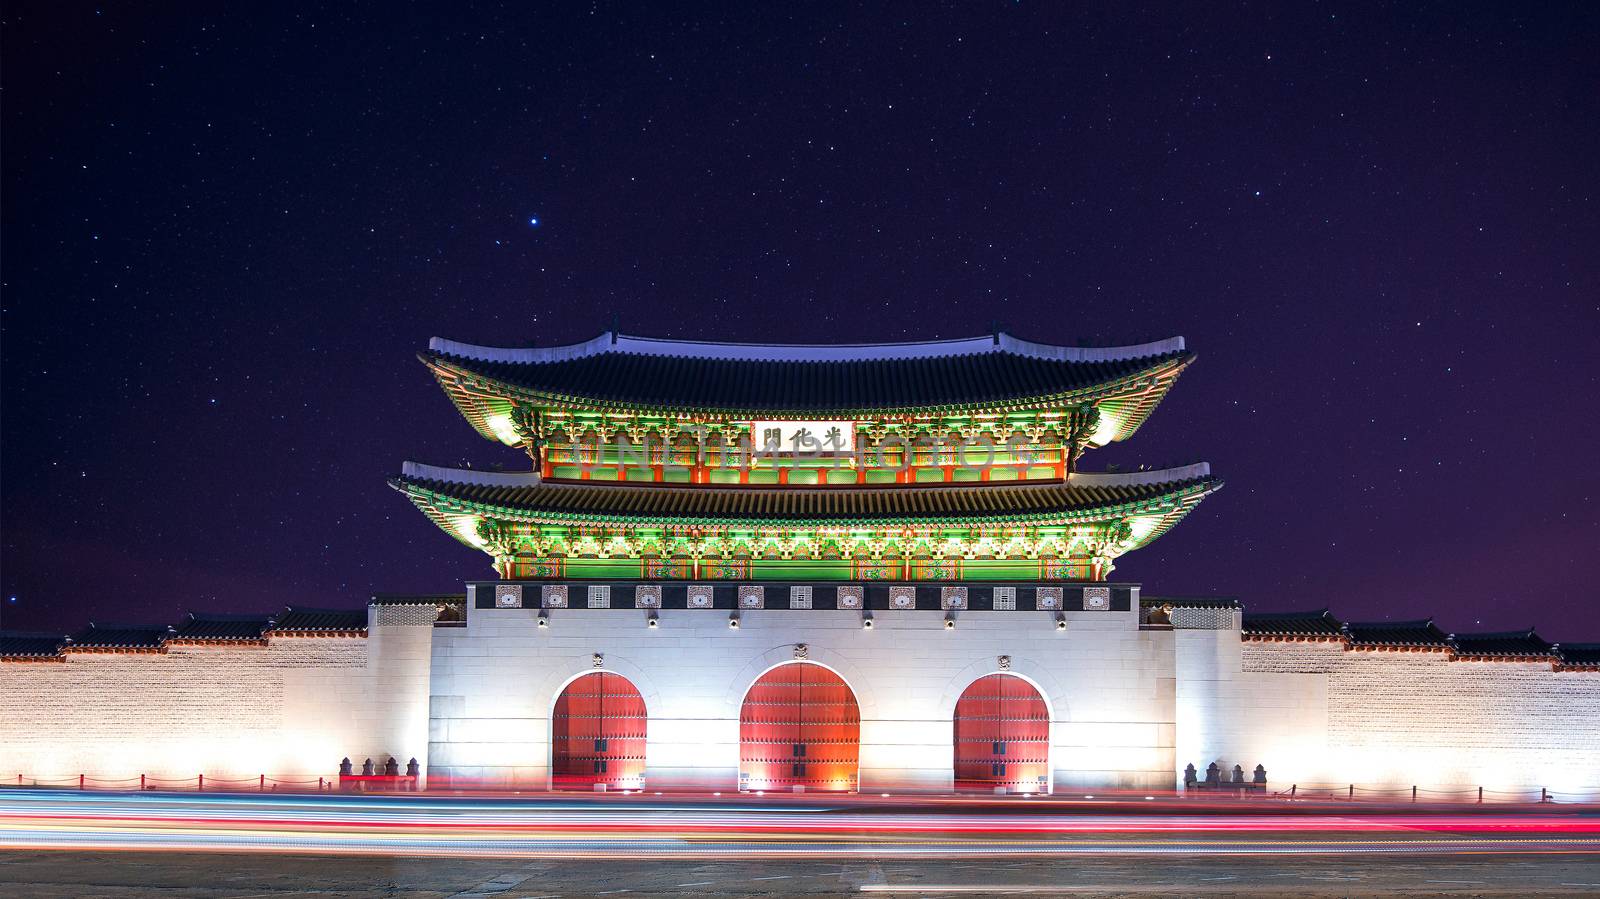 Gyeongbokgung palace at night in Seoul, South Korea.